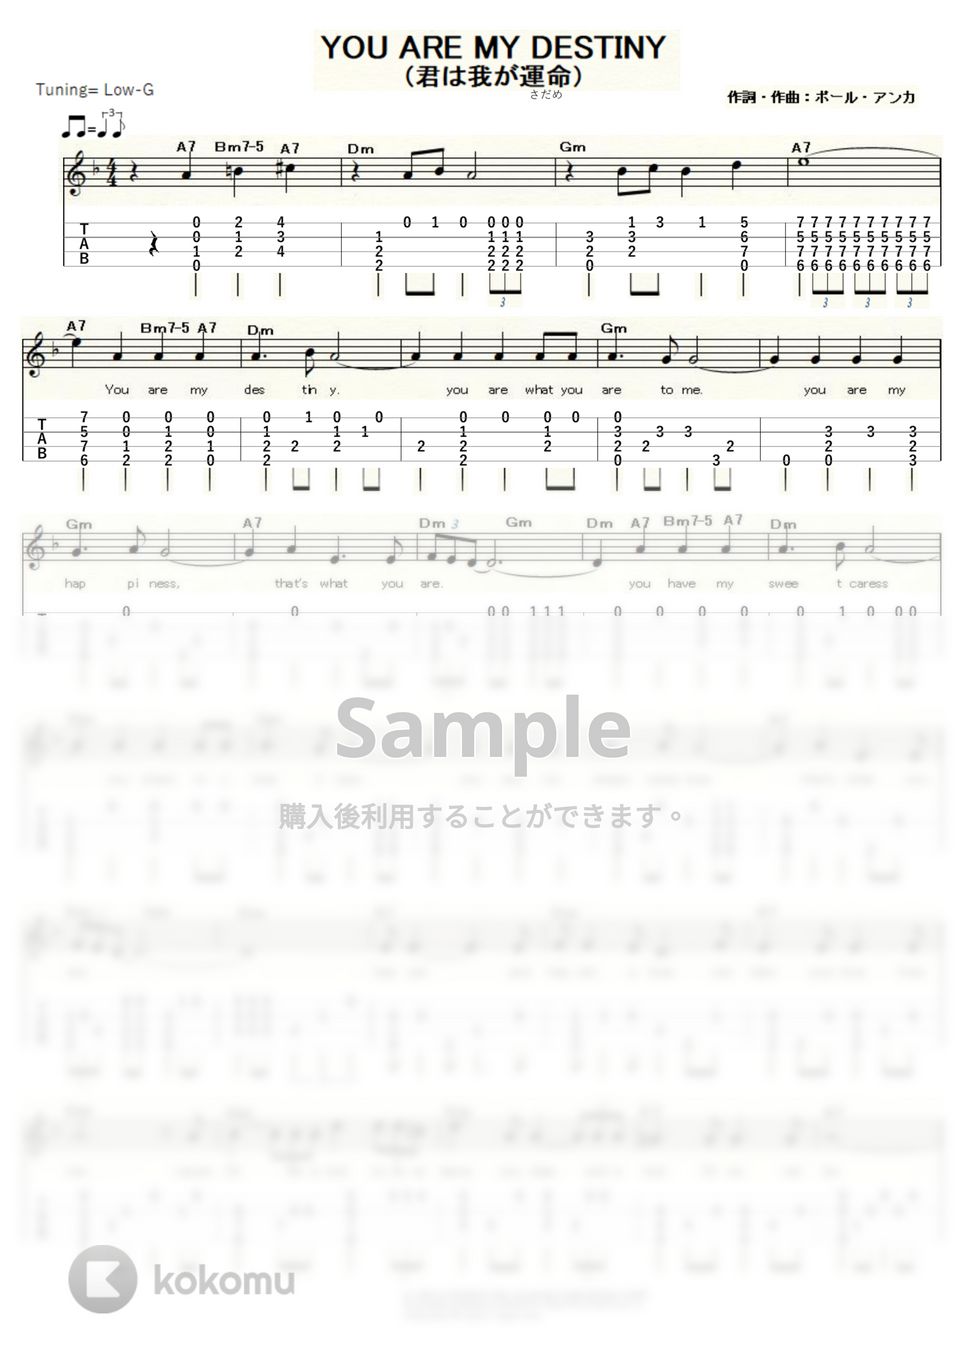 ポール・アンカ - You Are My Destiny (ｳｸﾚﾚｿﾛ/Low-G/中級) by ukulelepapa